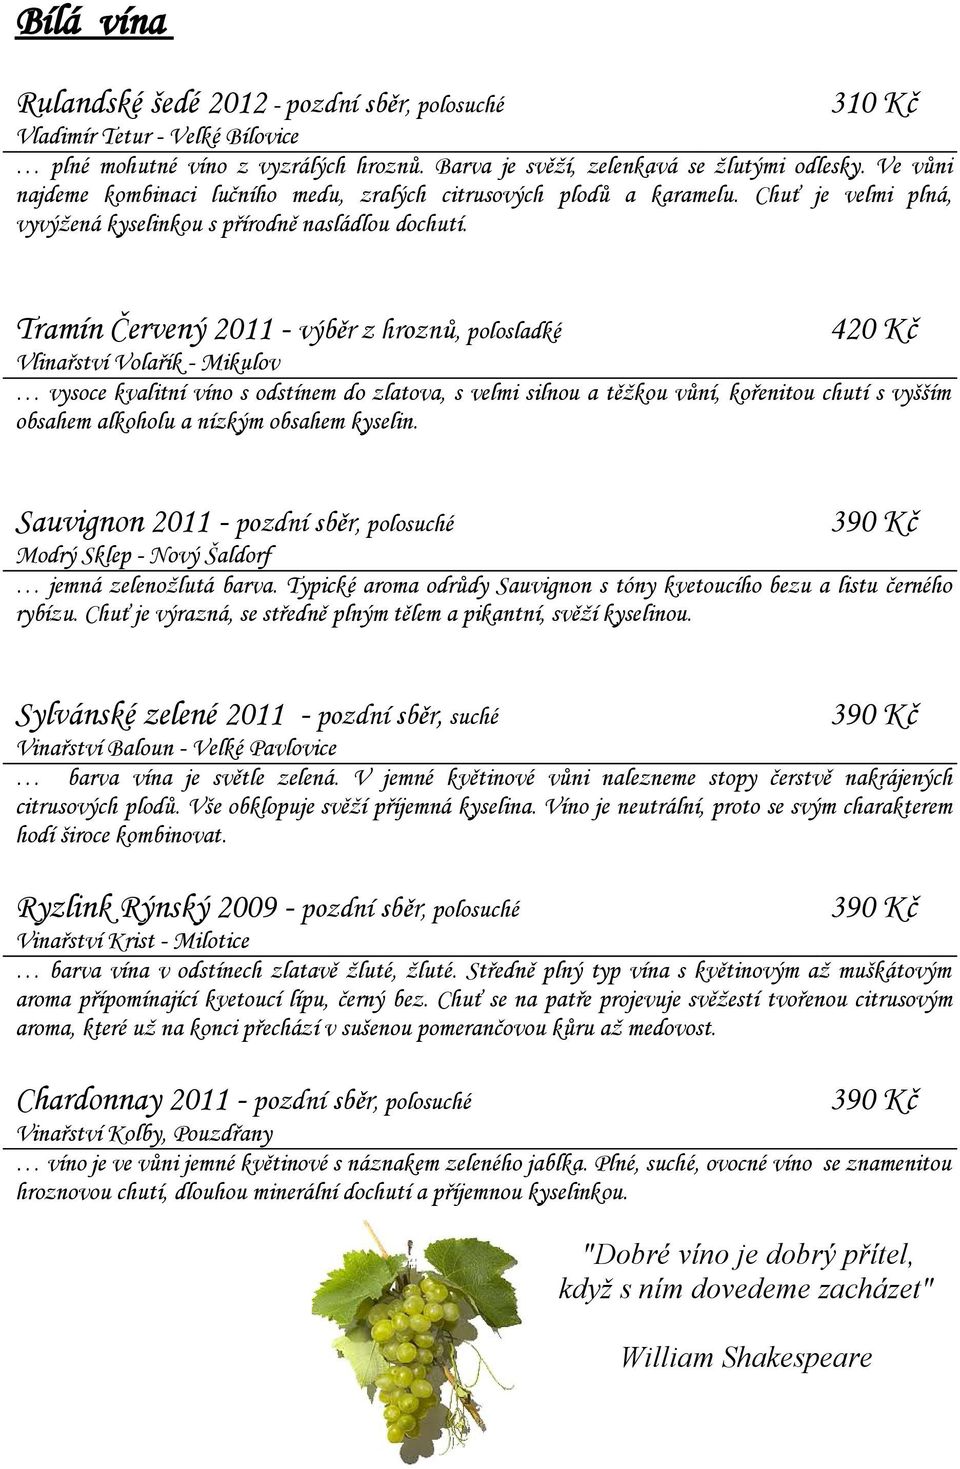 Tramín Červený 2011 - výběr z hroznů, polosladké 420 Kč Vlinařství Volařík - Mikulov vysoce kvalitní víno s odstínem do zlatova, s velmi silnou a těžkou vůní, kořenitou chutí s vyšším obsahem